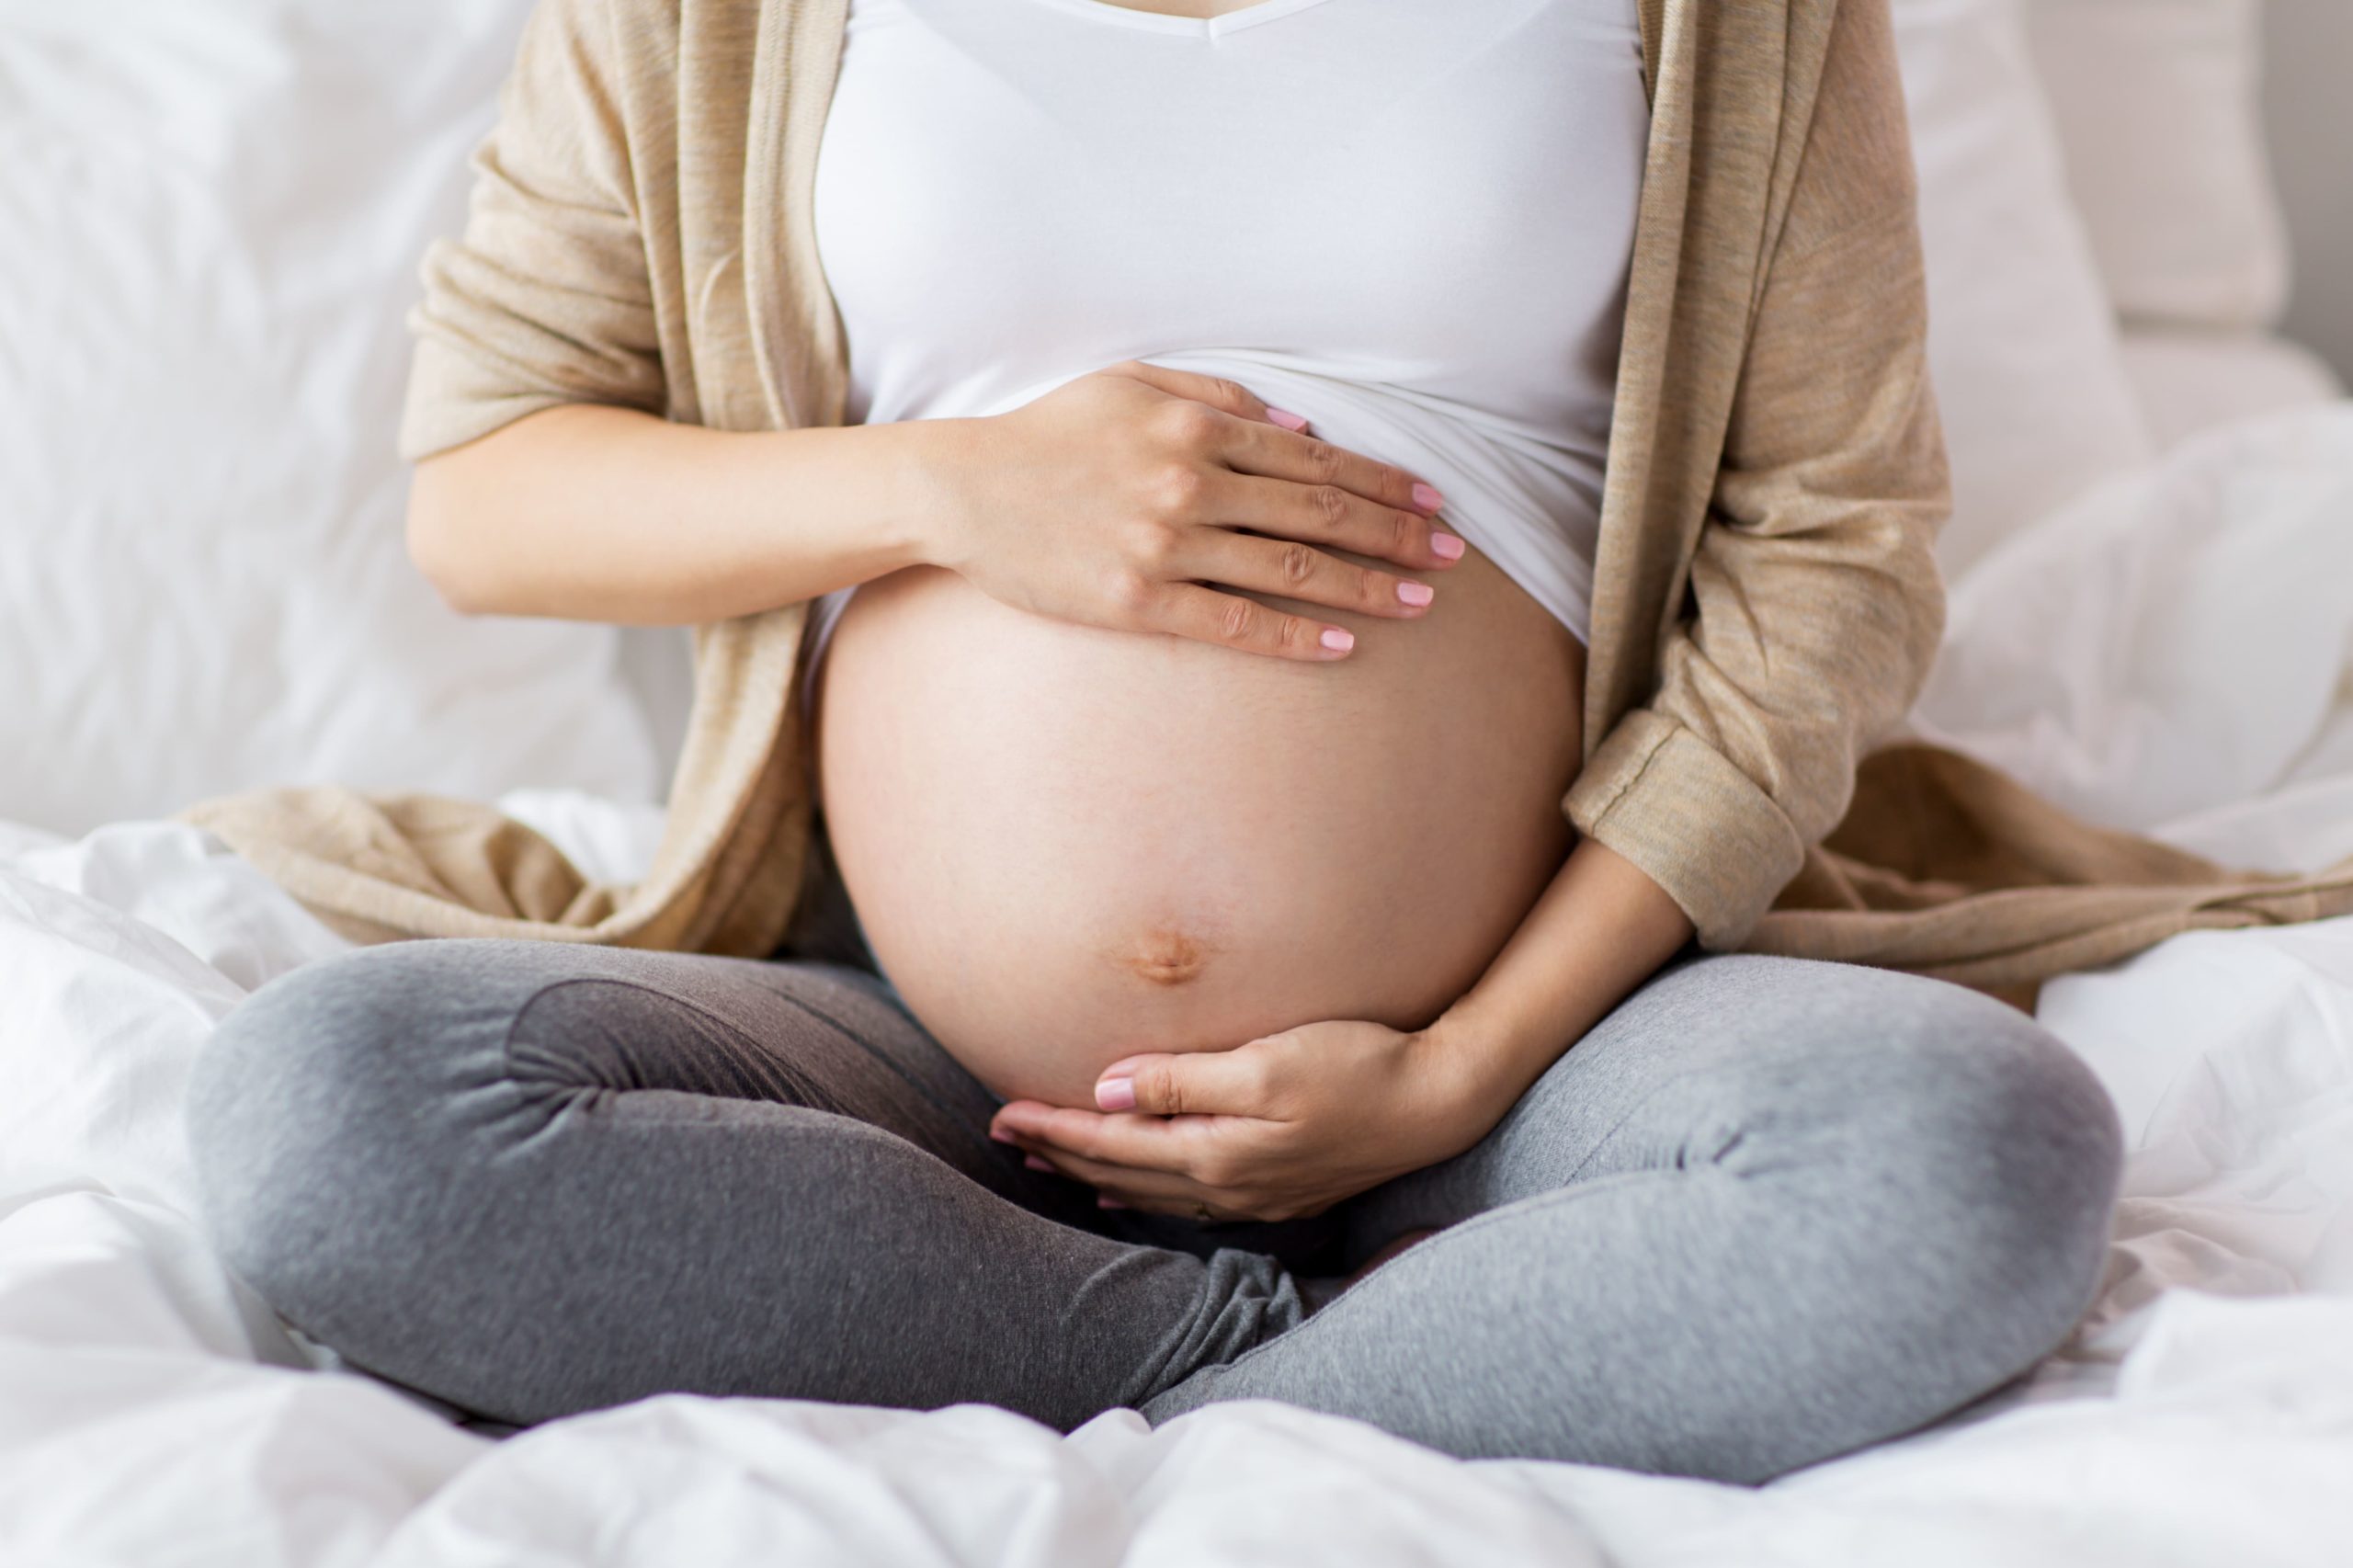 Anemie 9eme mois grossesse. Yoga Prénatal 9ème mois de grossesse ulceras por vire chez lhomme